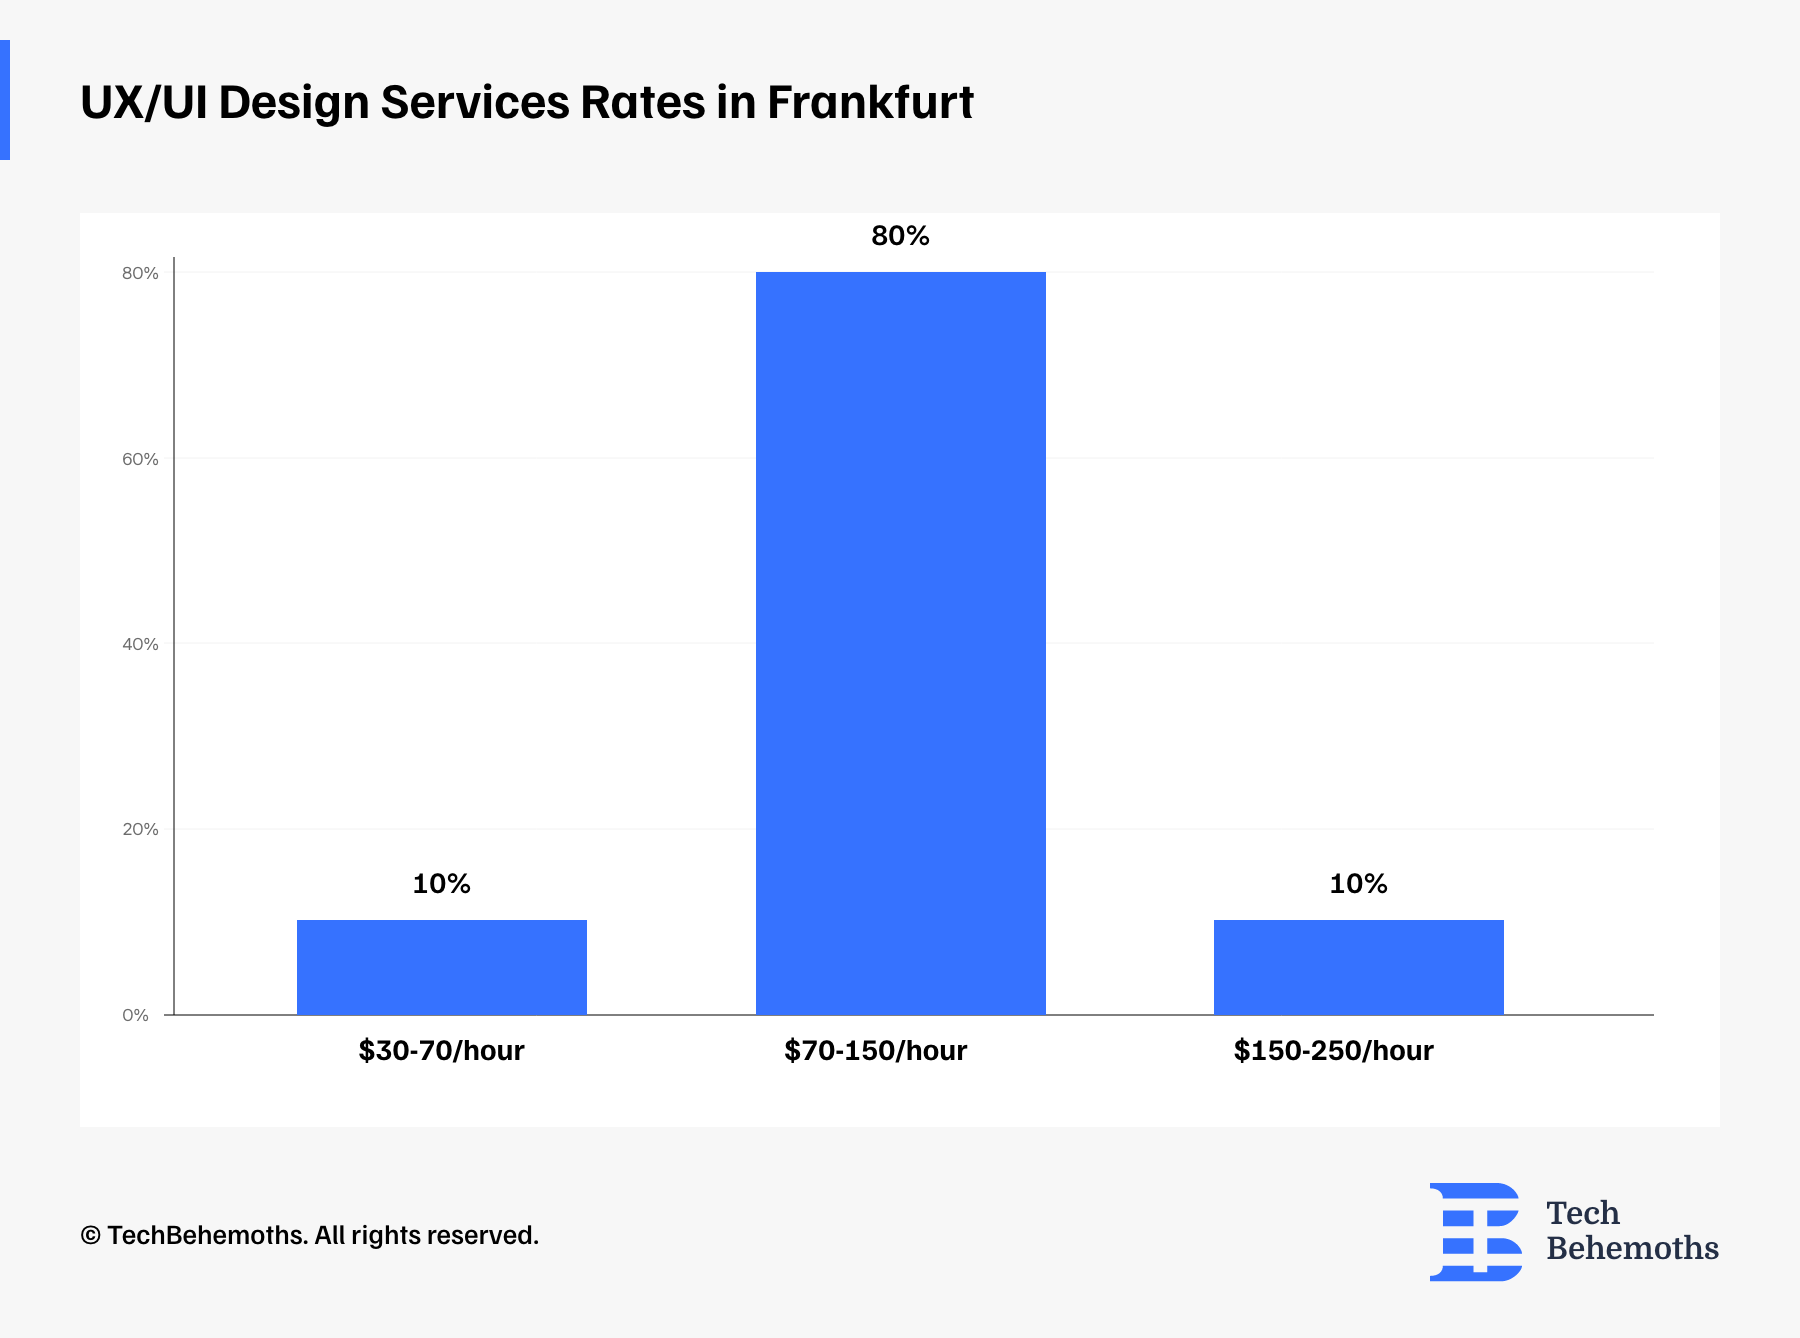 UX/UI Design Services Rates in Frankfurt